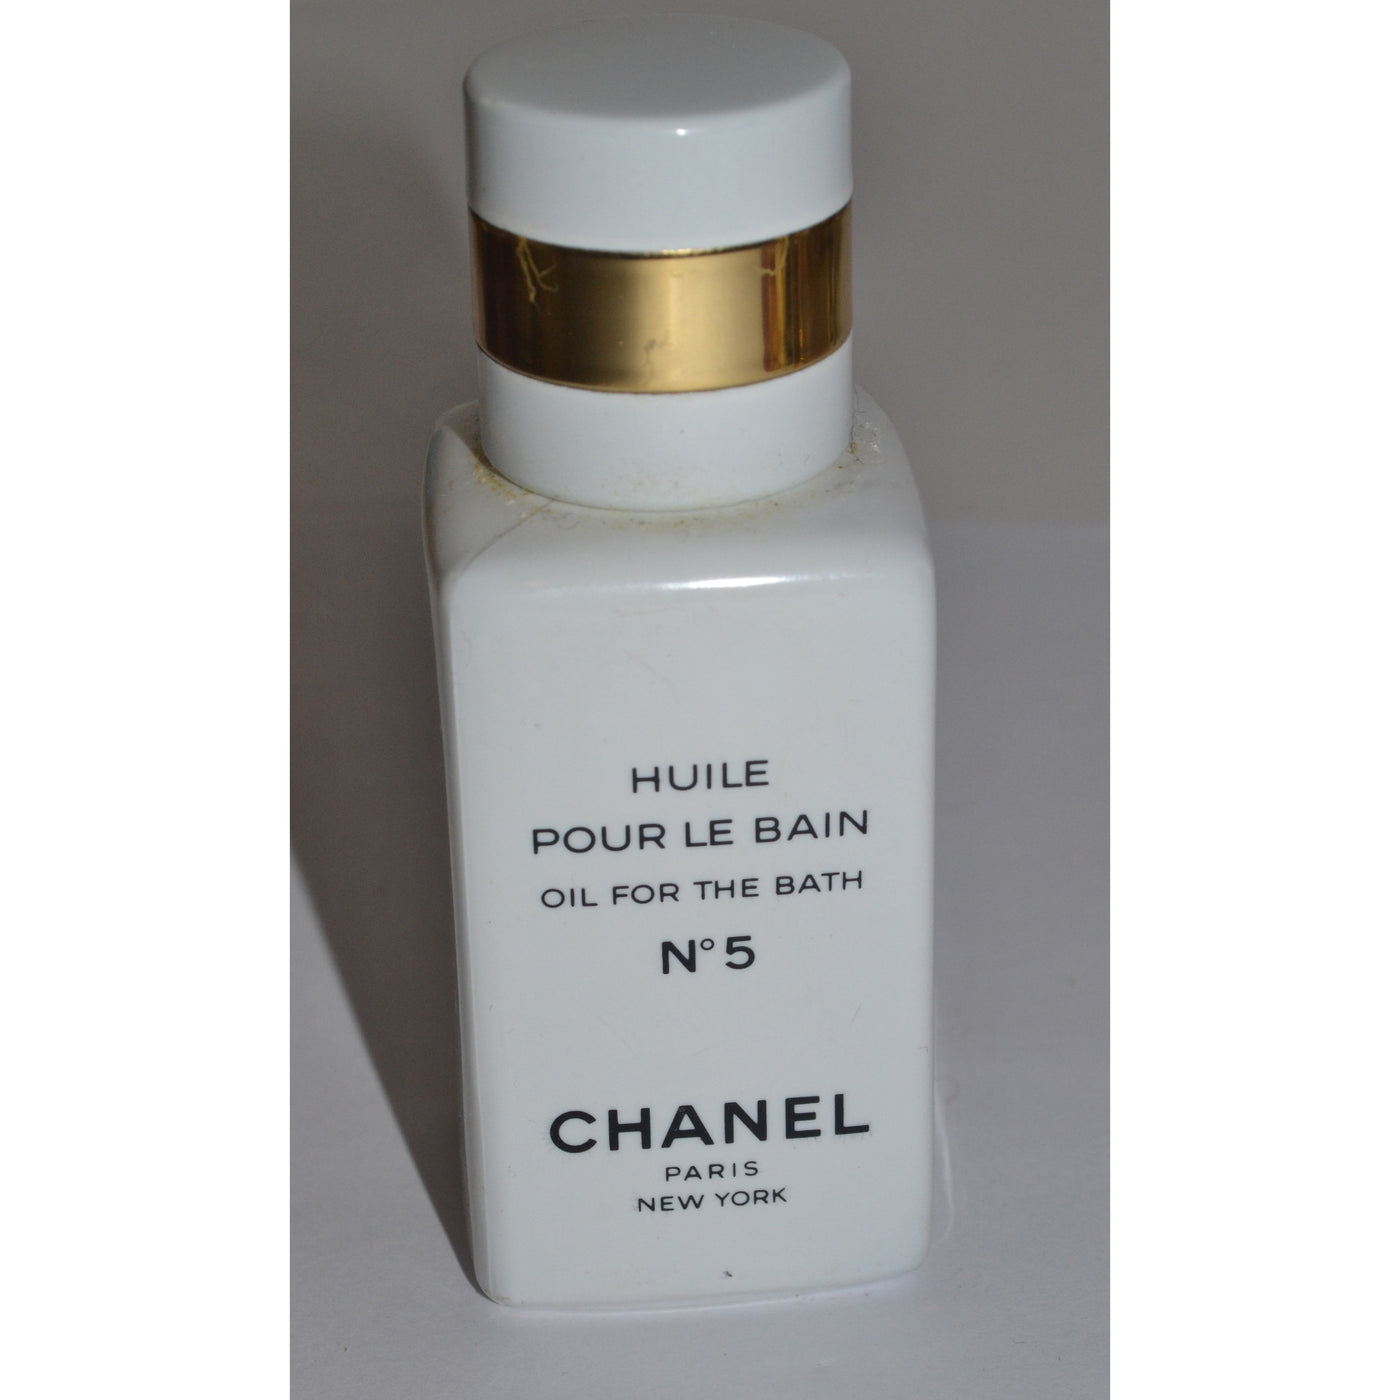 Vintage Chanel No 5 Bath Oil